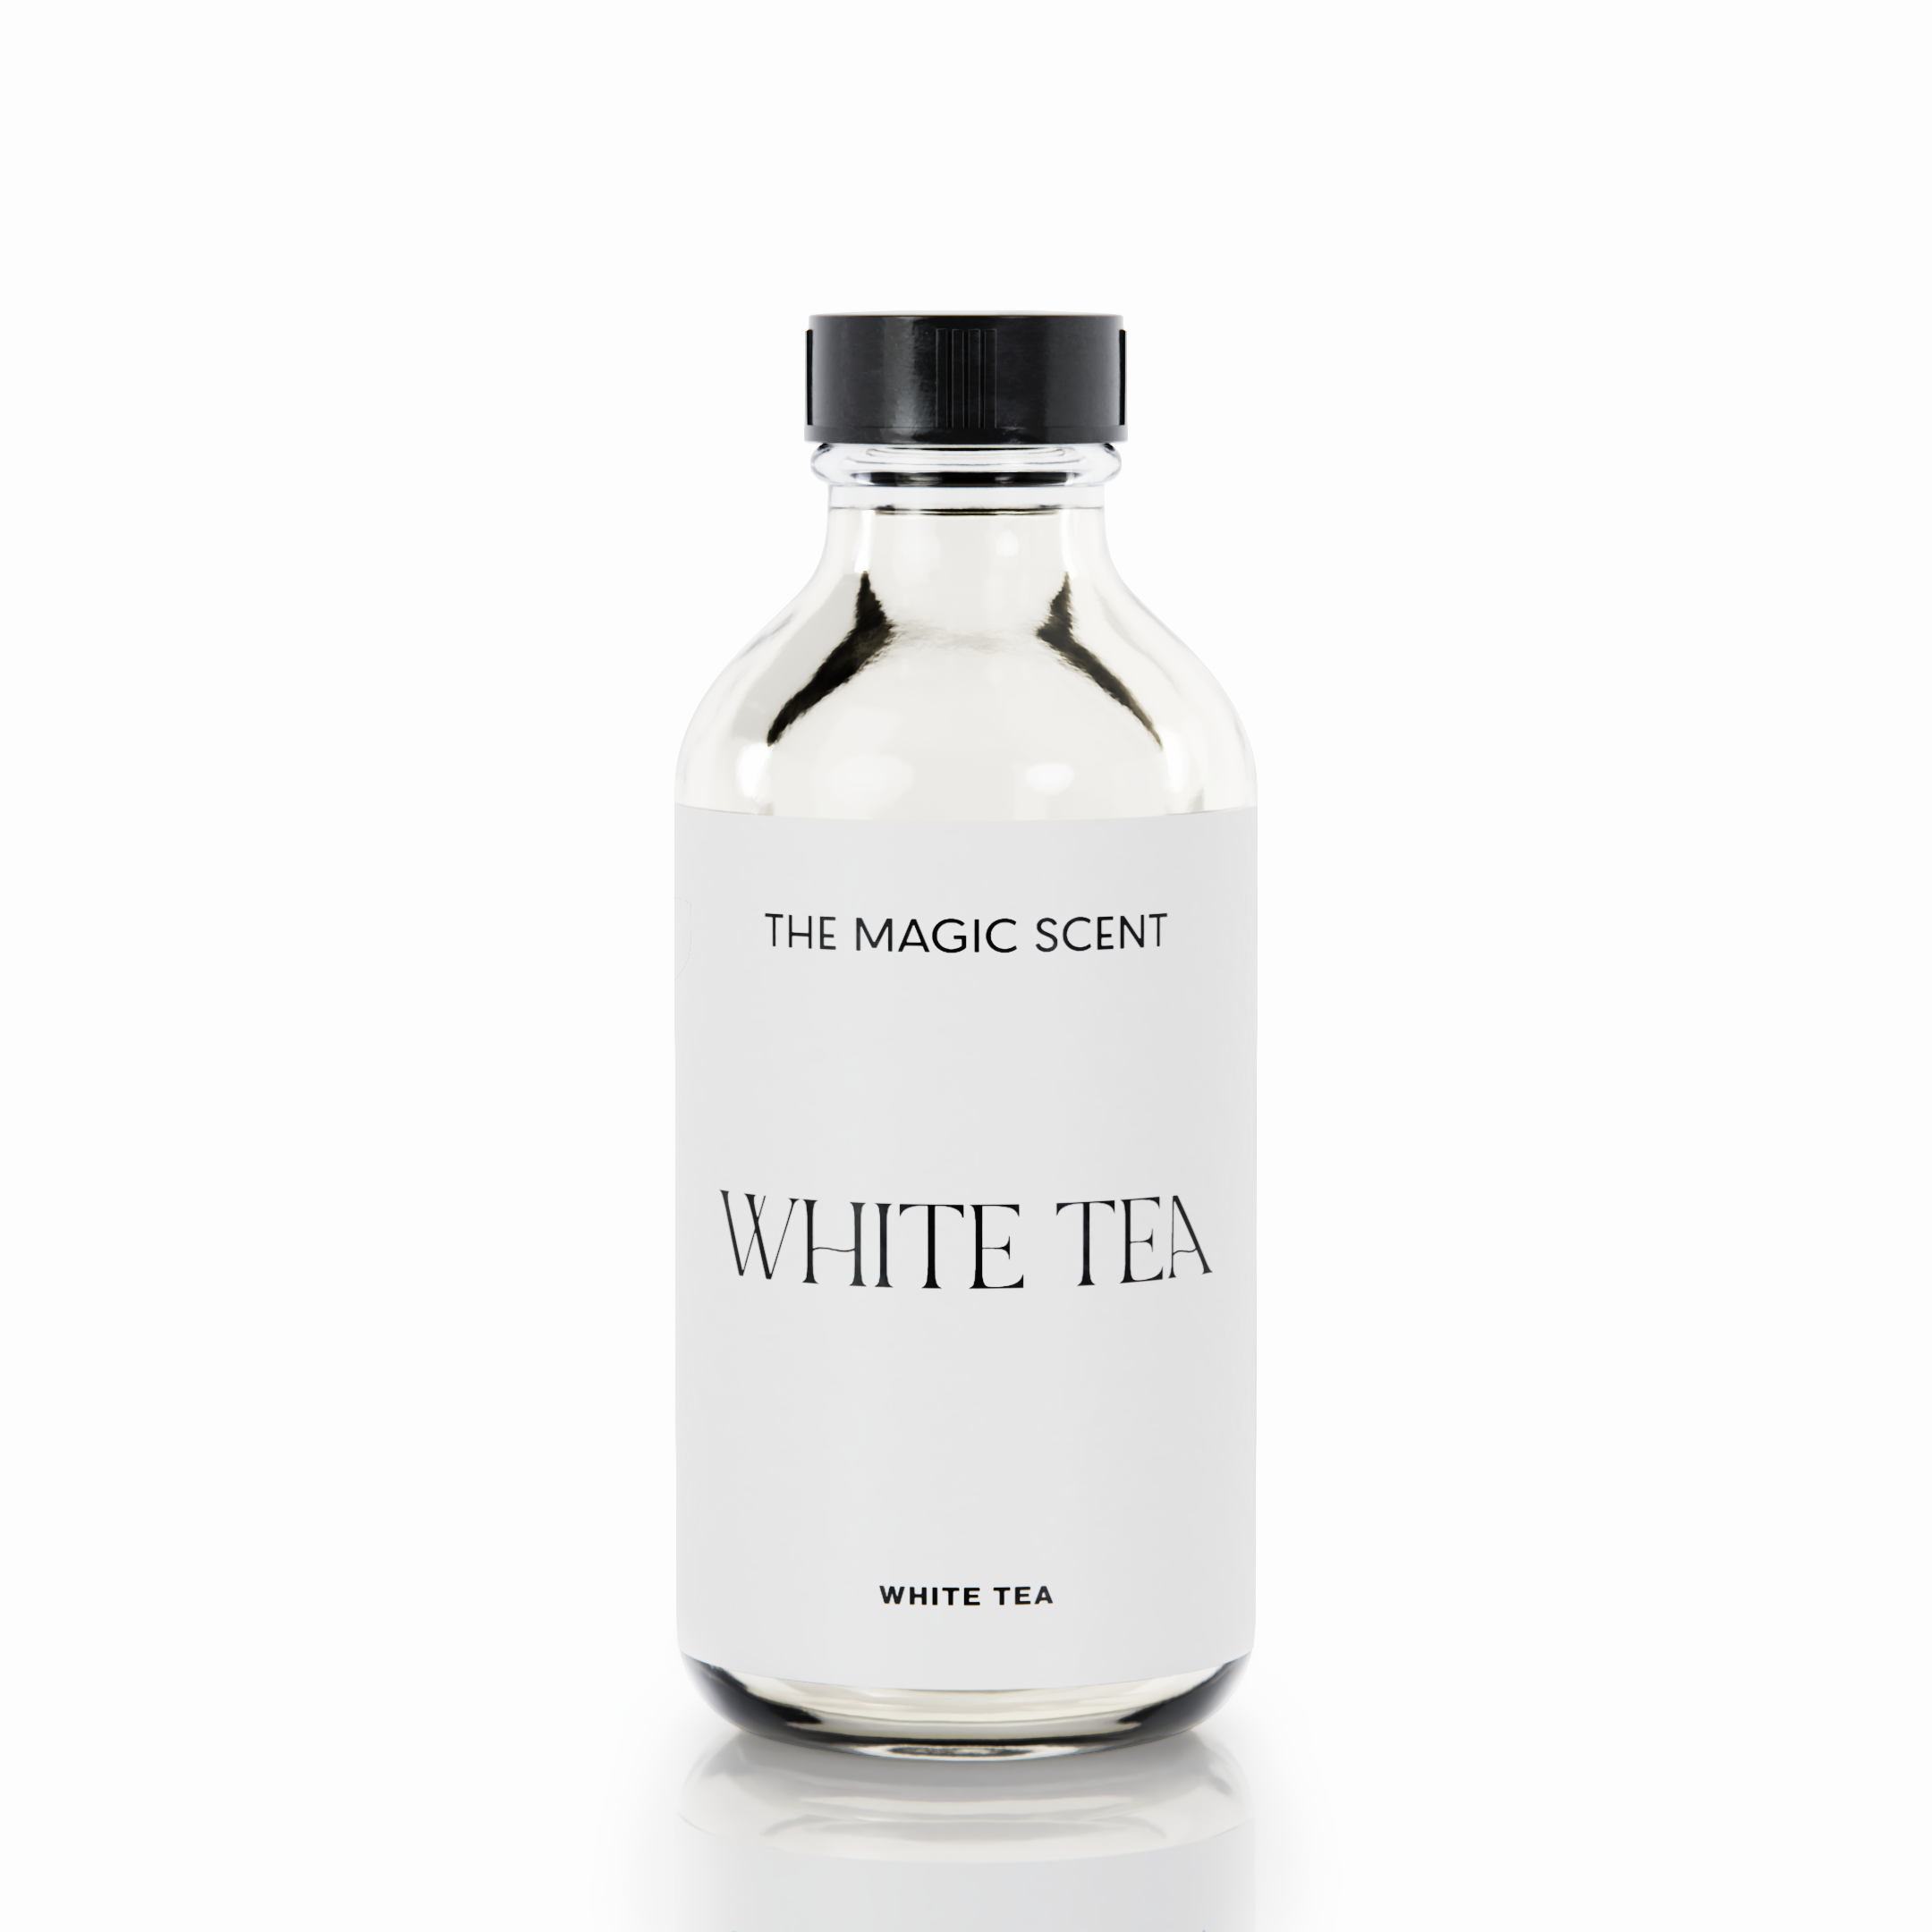 White Tea – The Magic Scent